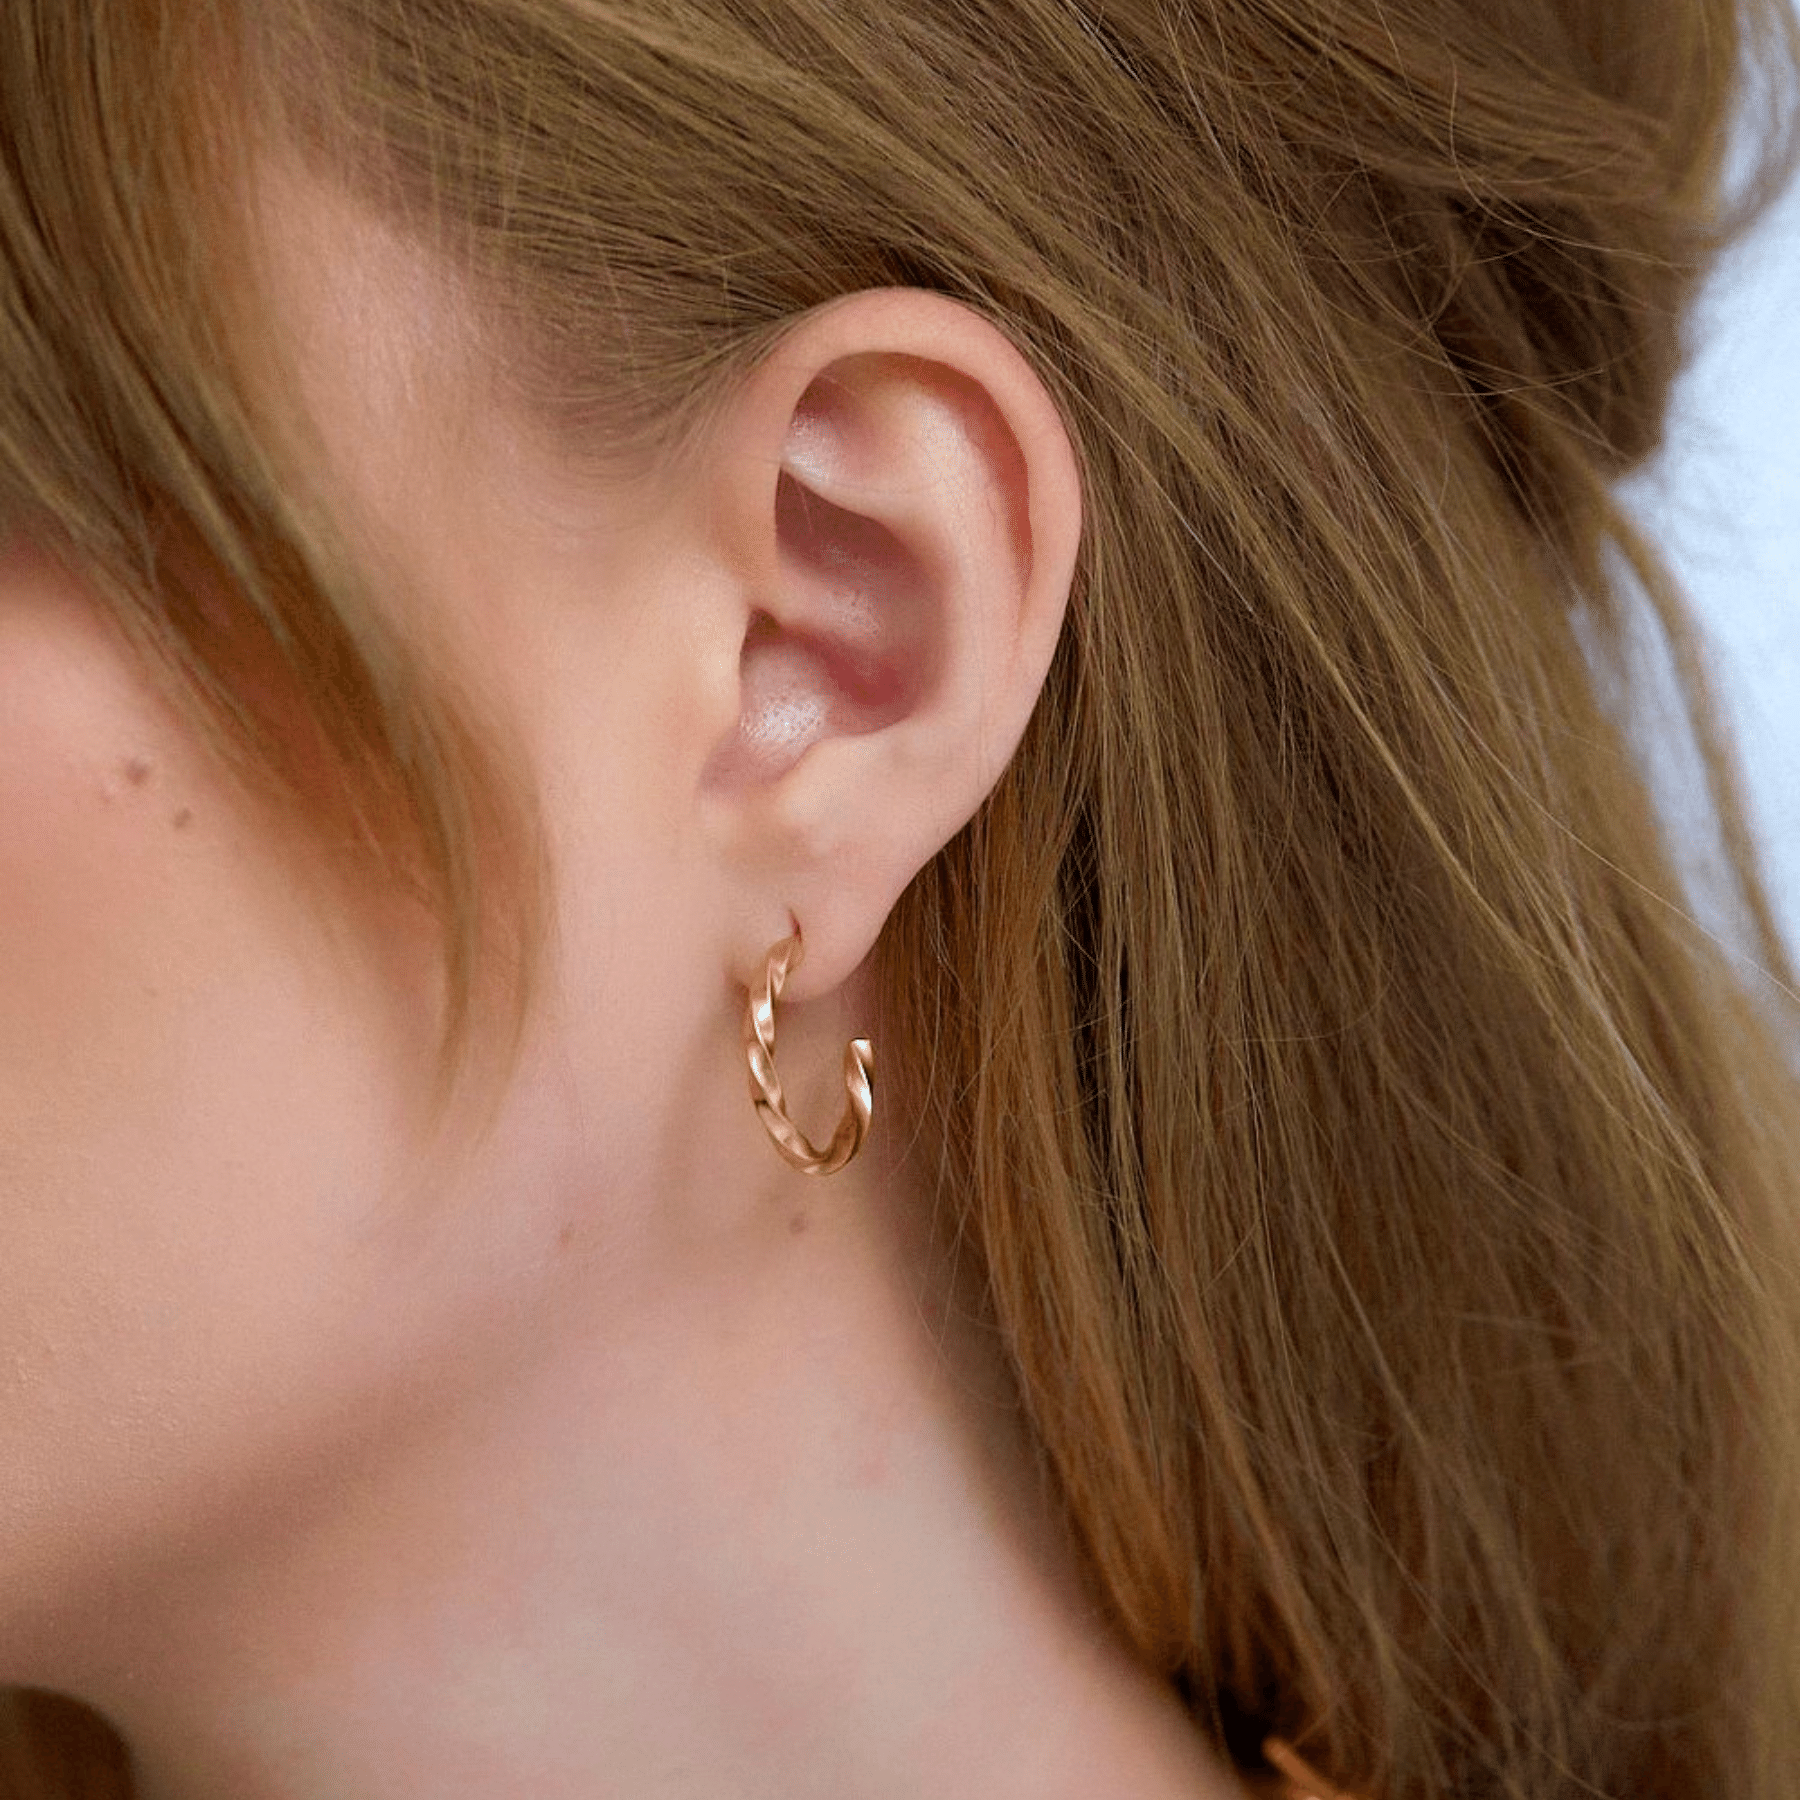 Twisted small hoop earrings in 18k gold vermeil.